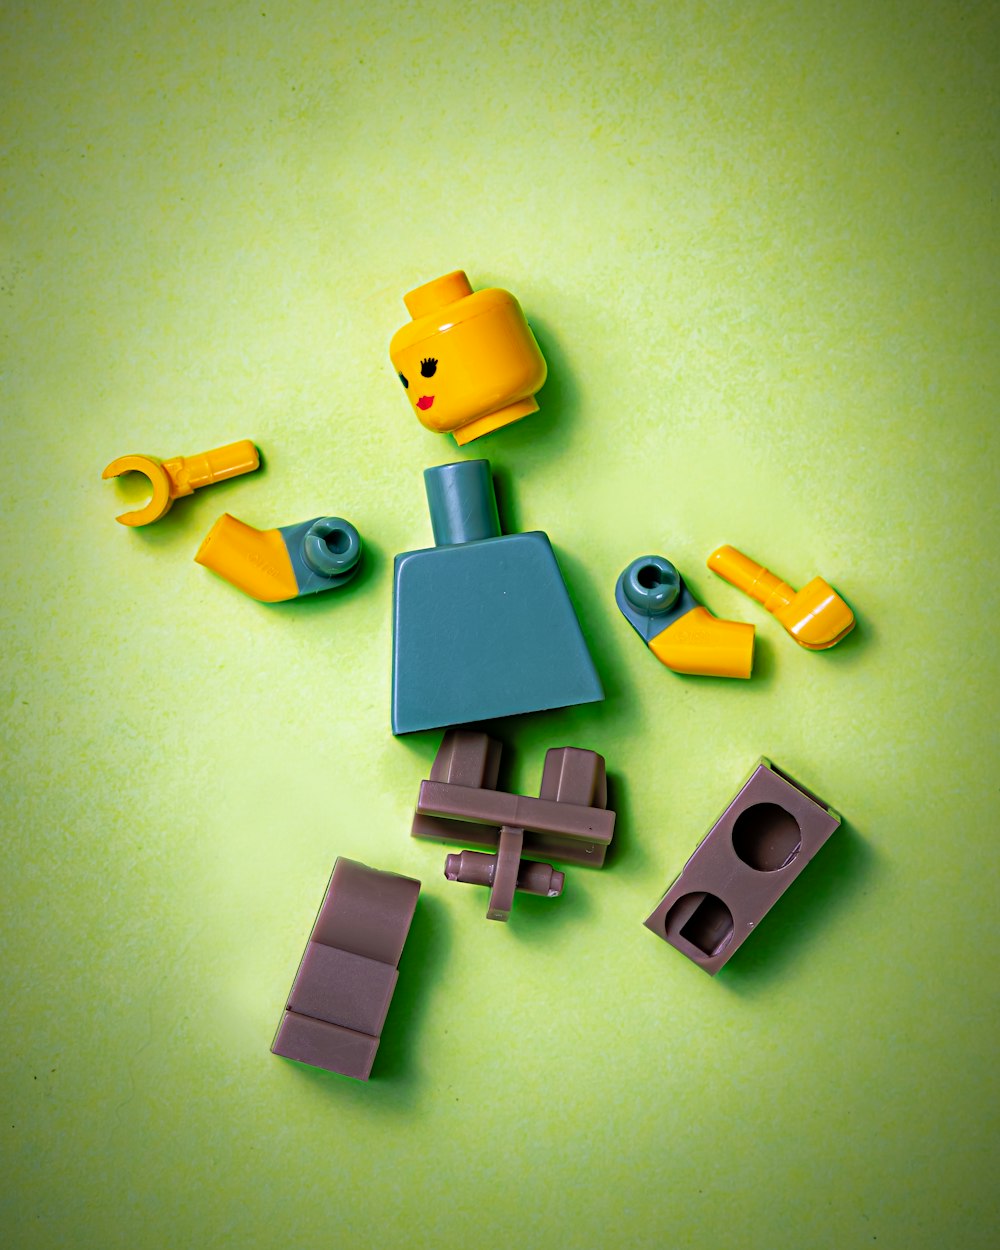 juguete de plástico azul, naranja, verde y amarillo